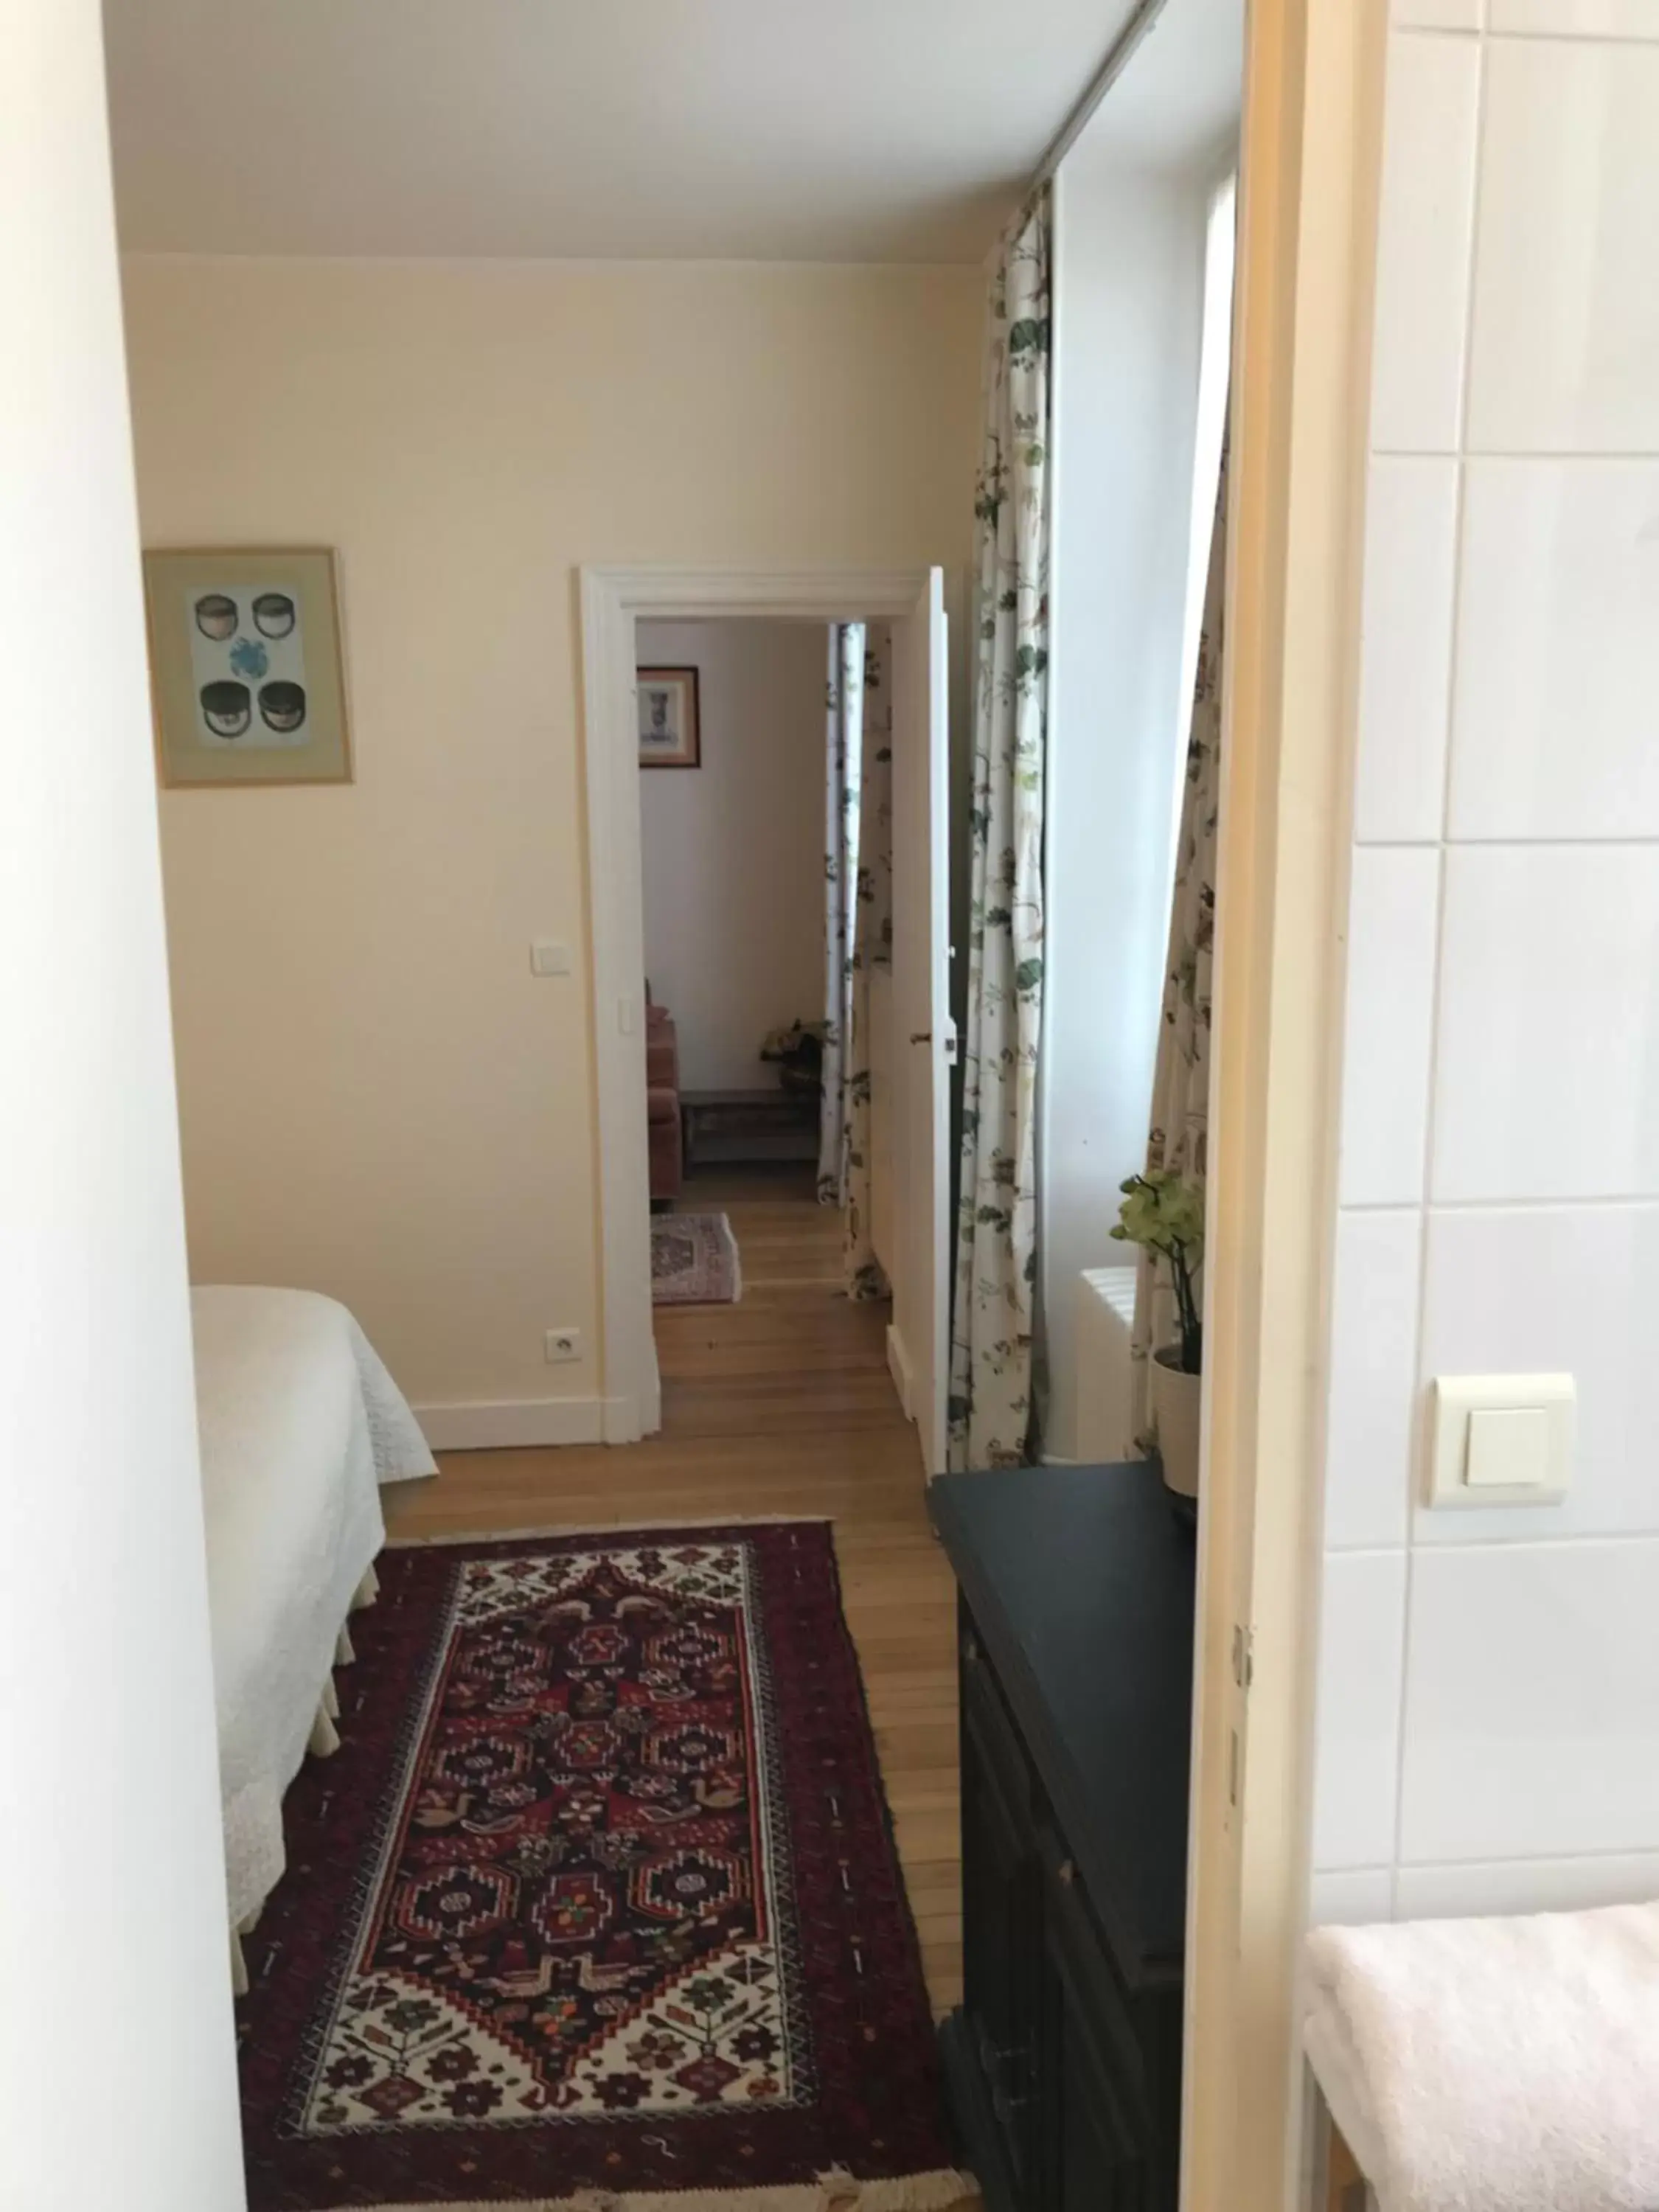 Photo of the whole room, Bathroom in Clos Saint Nicolas